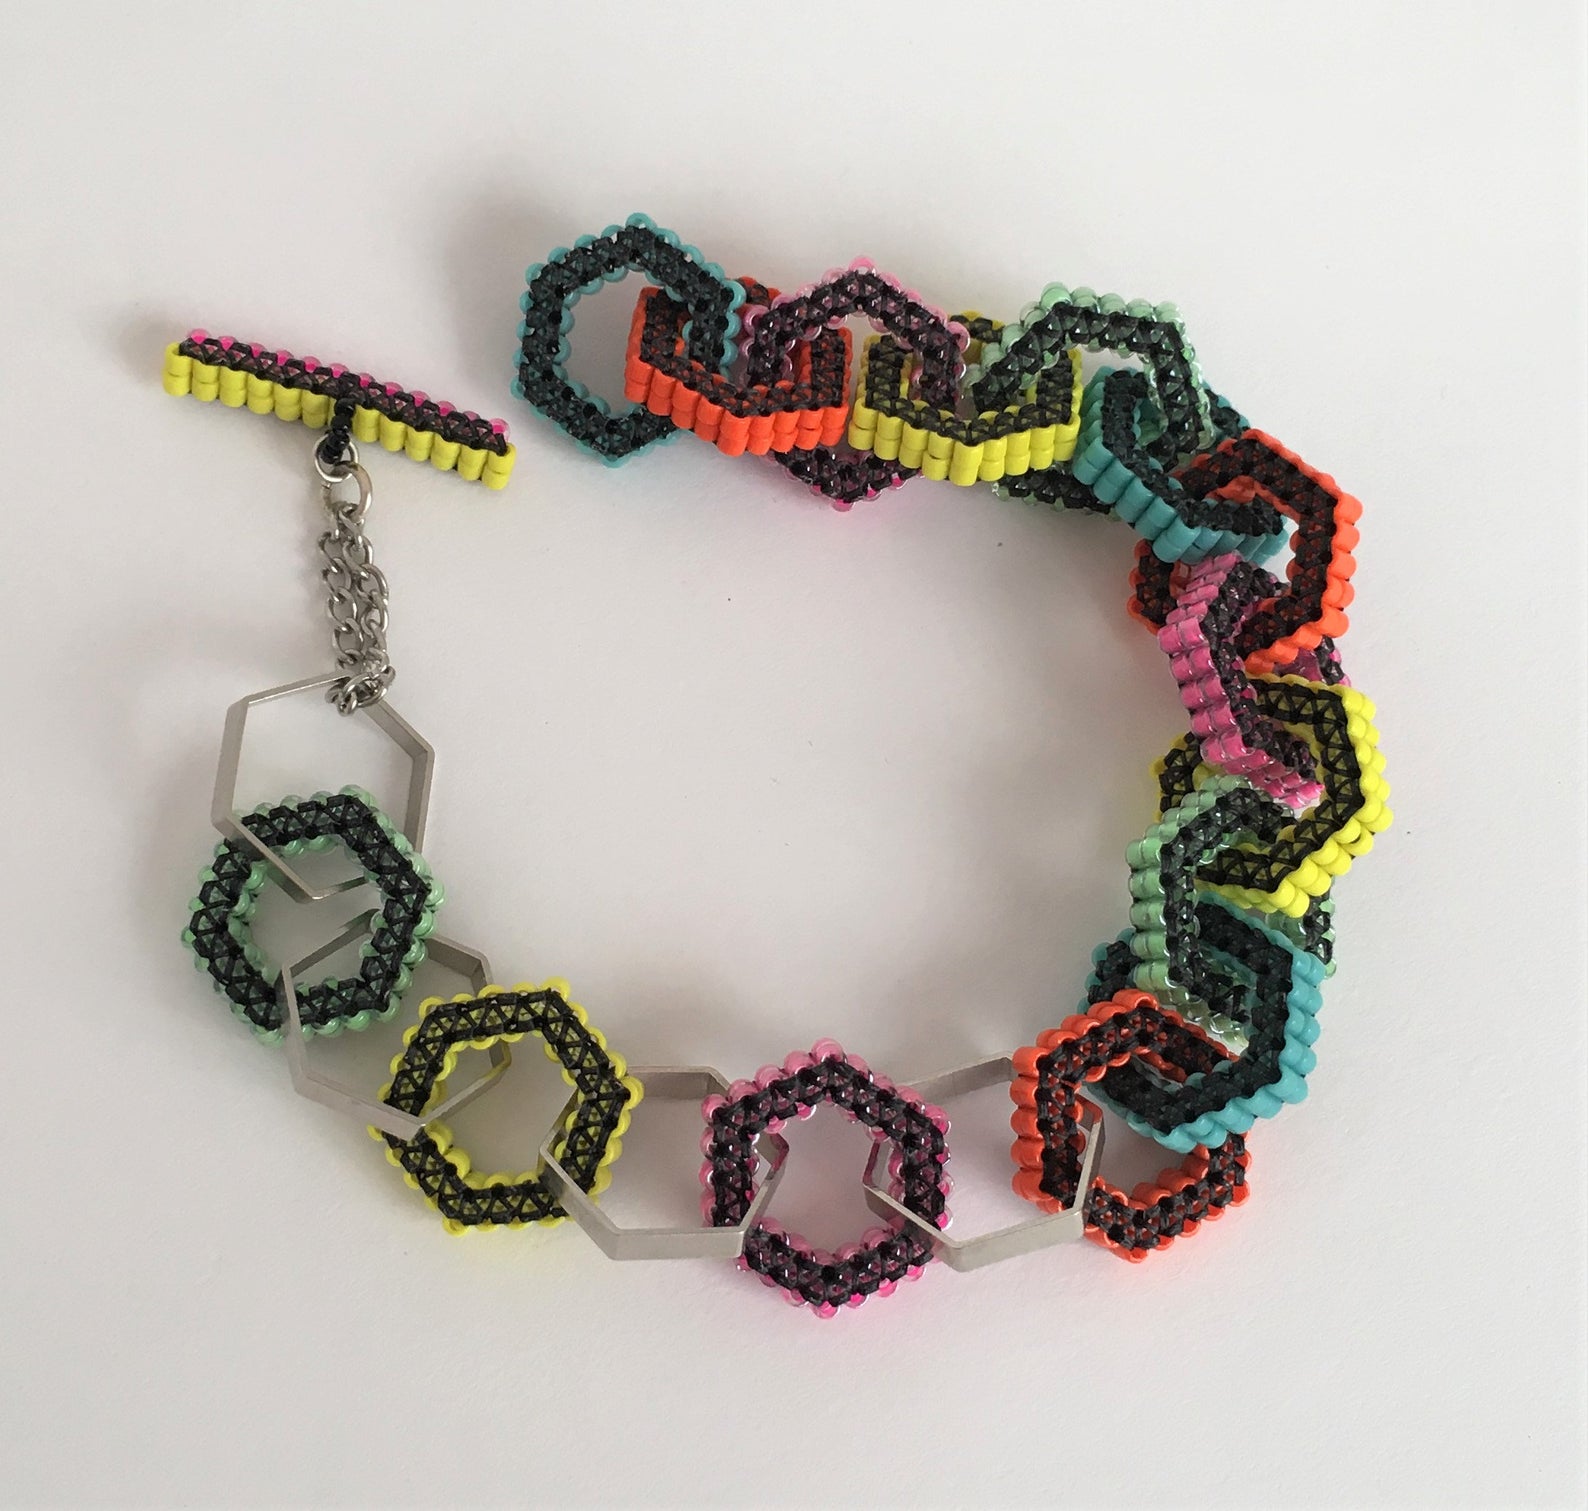 Looped Quilling Bracelet / DIY / Looped Bracelet Tutorial | Priti Sharma -  YouTube